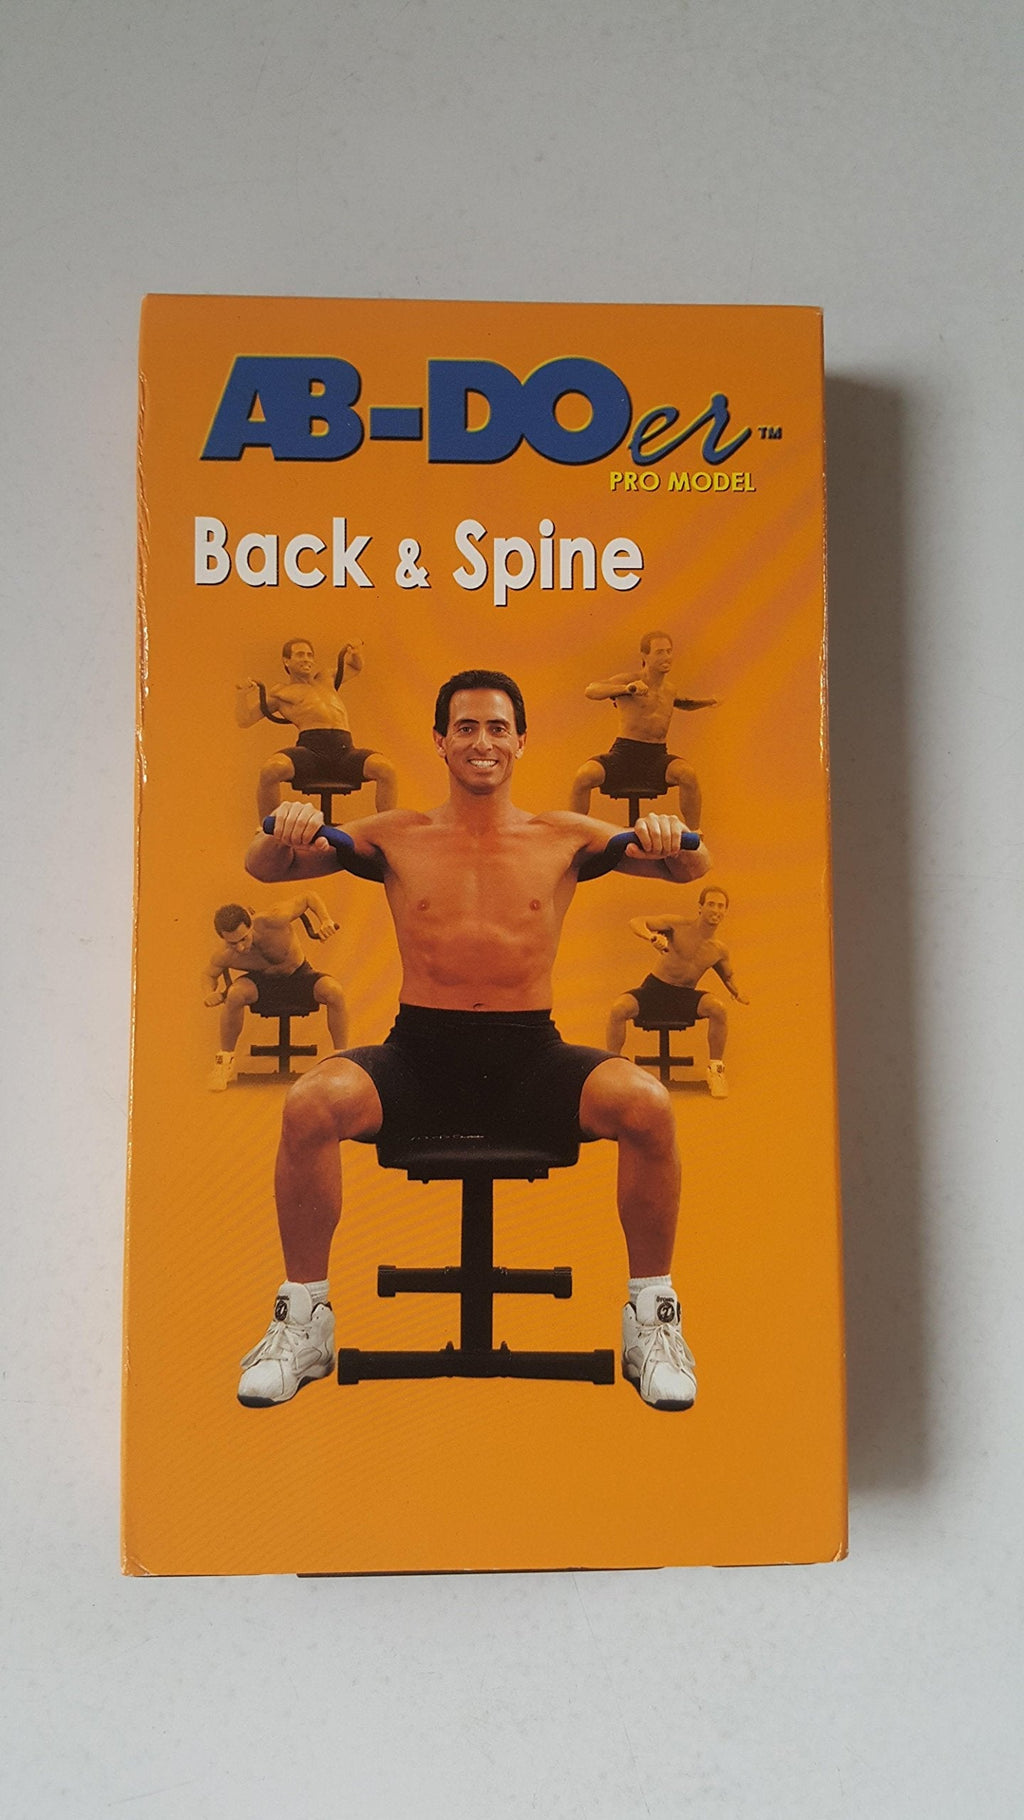 AB-DOer Pro Model Back & Spine - VHS